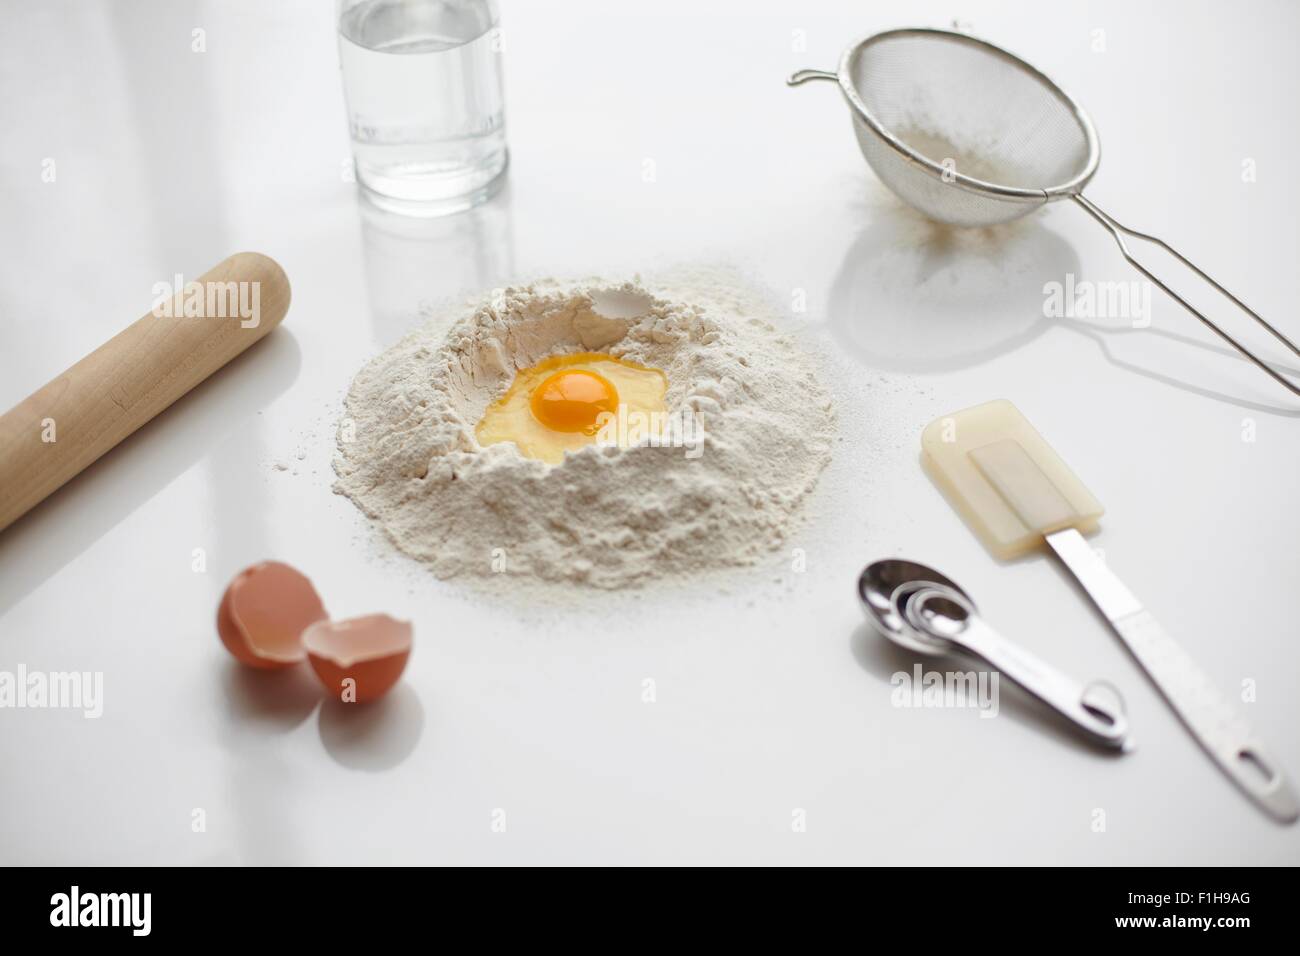 Preparazione di cottura con uovo crudo nel centro della pila di farina e utensili da cucina Foto Stock